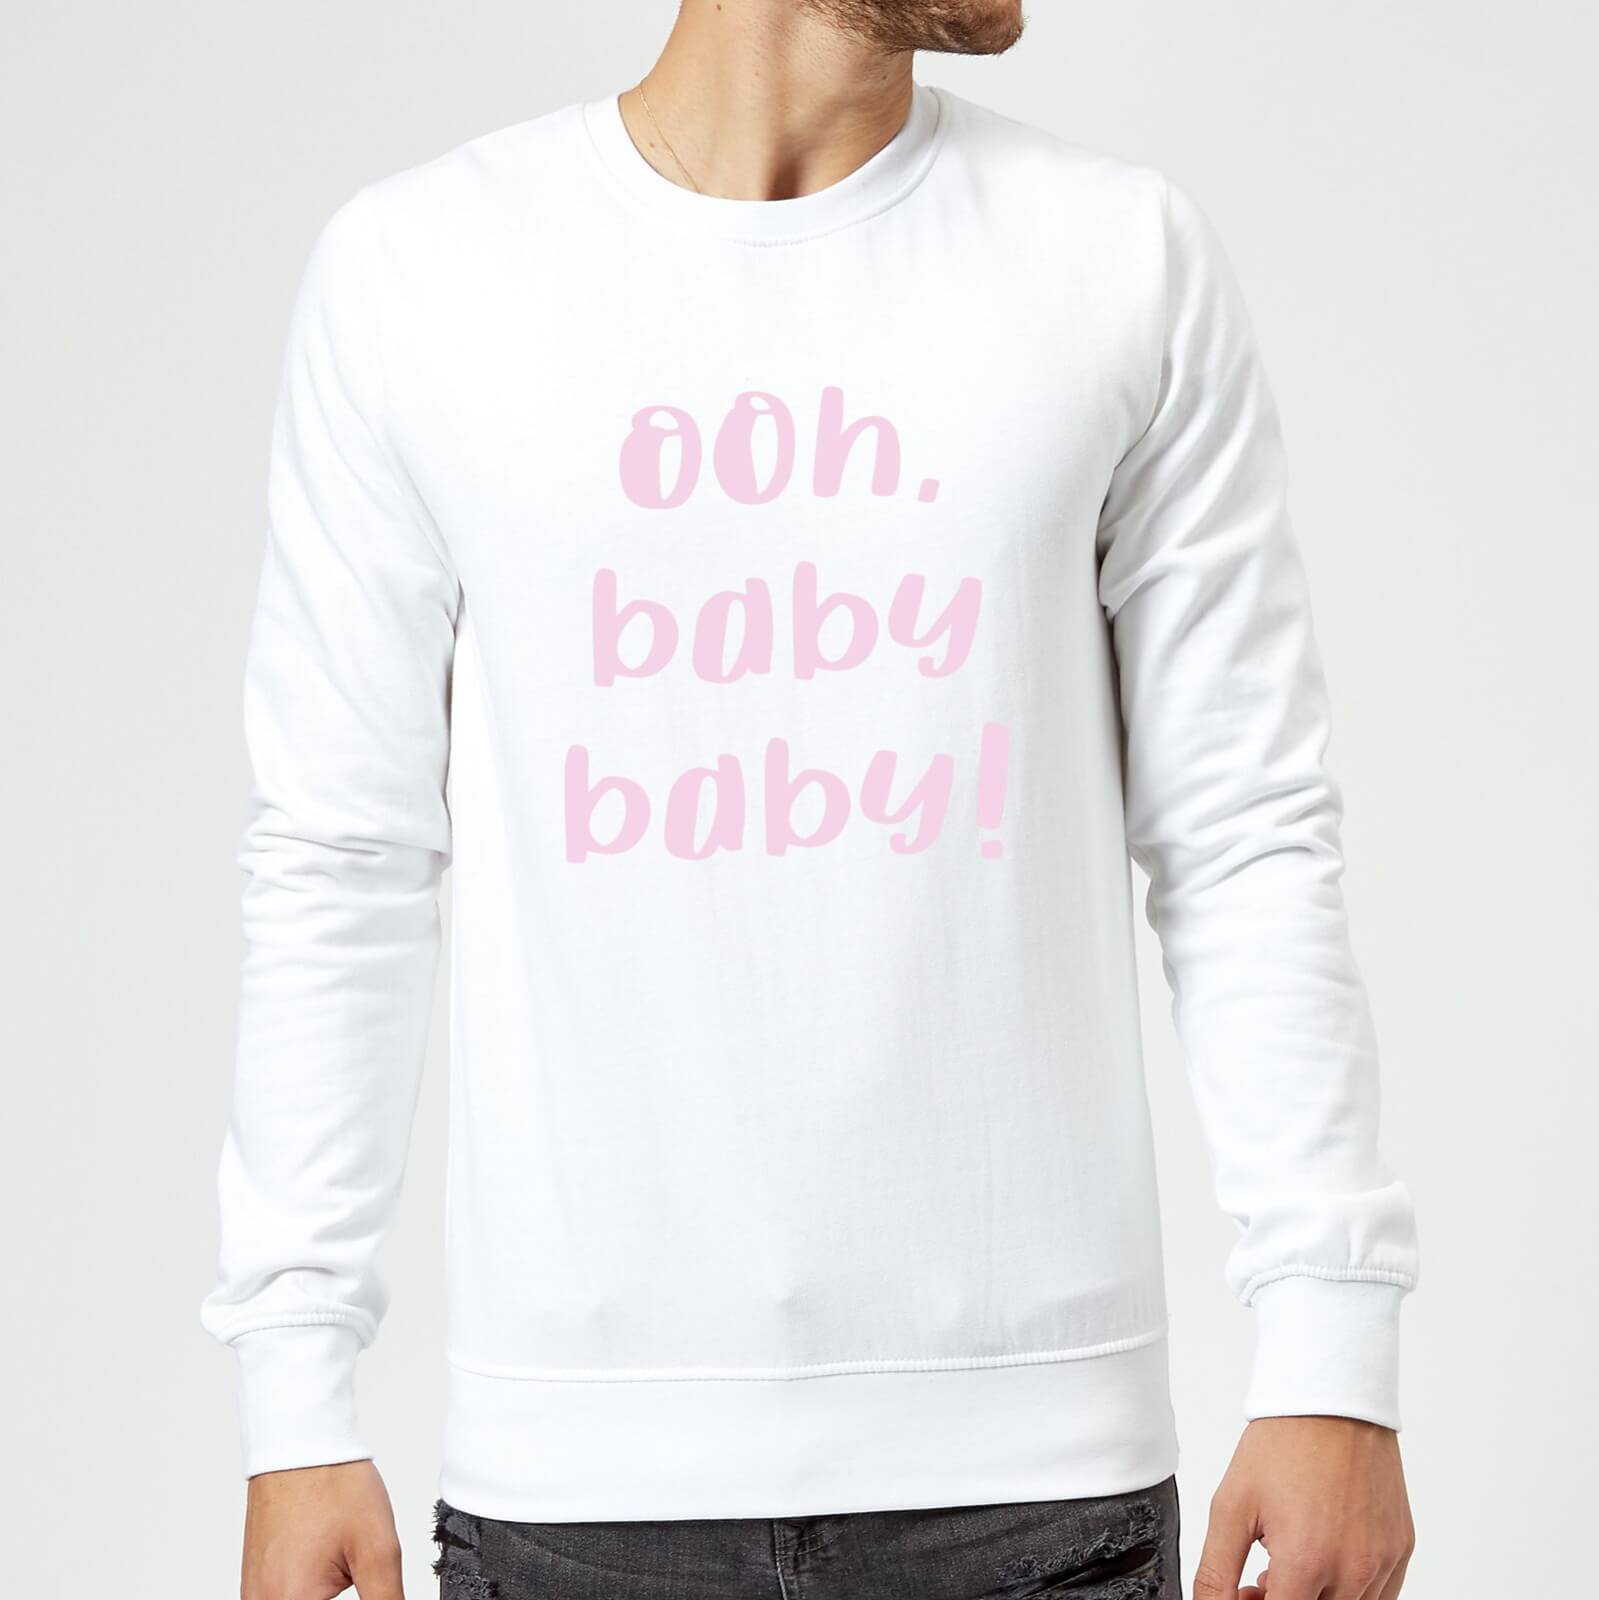 Ooh Baby Baby Sweatshirt - White - S - White